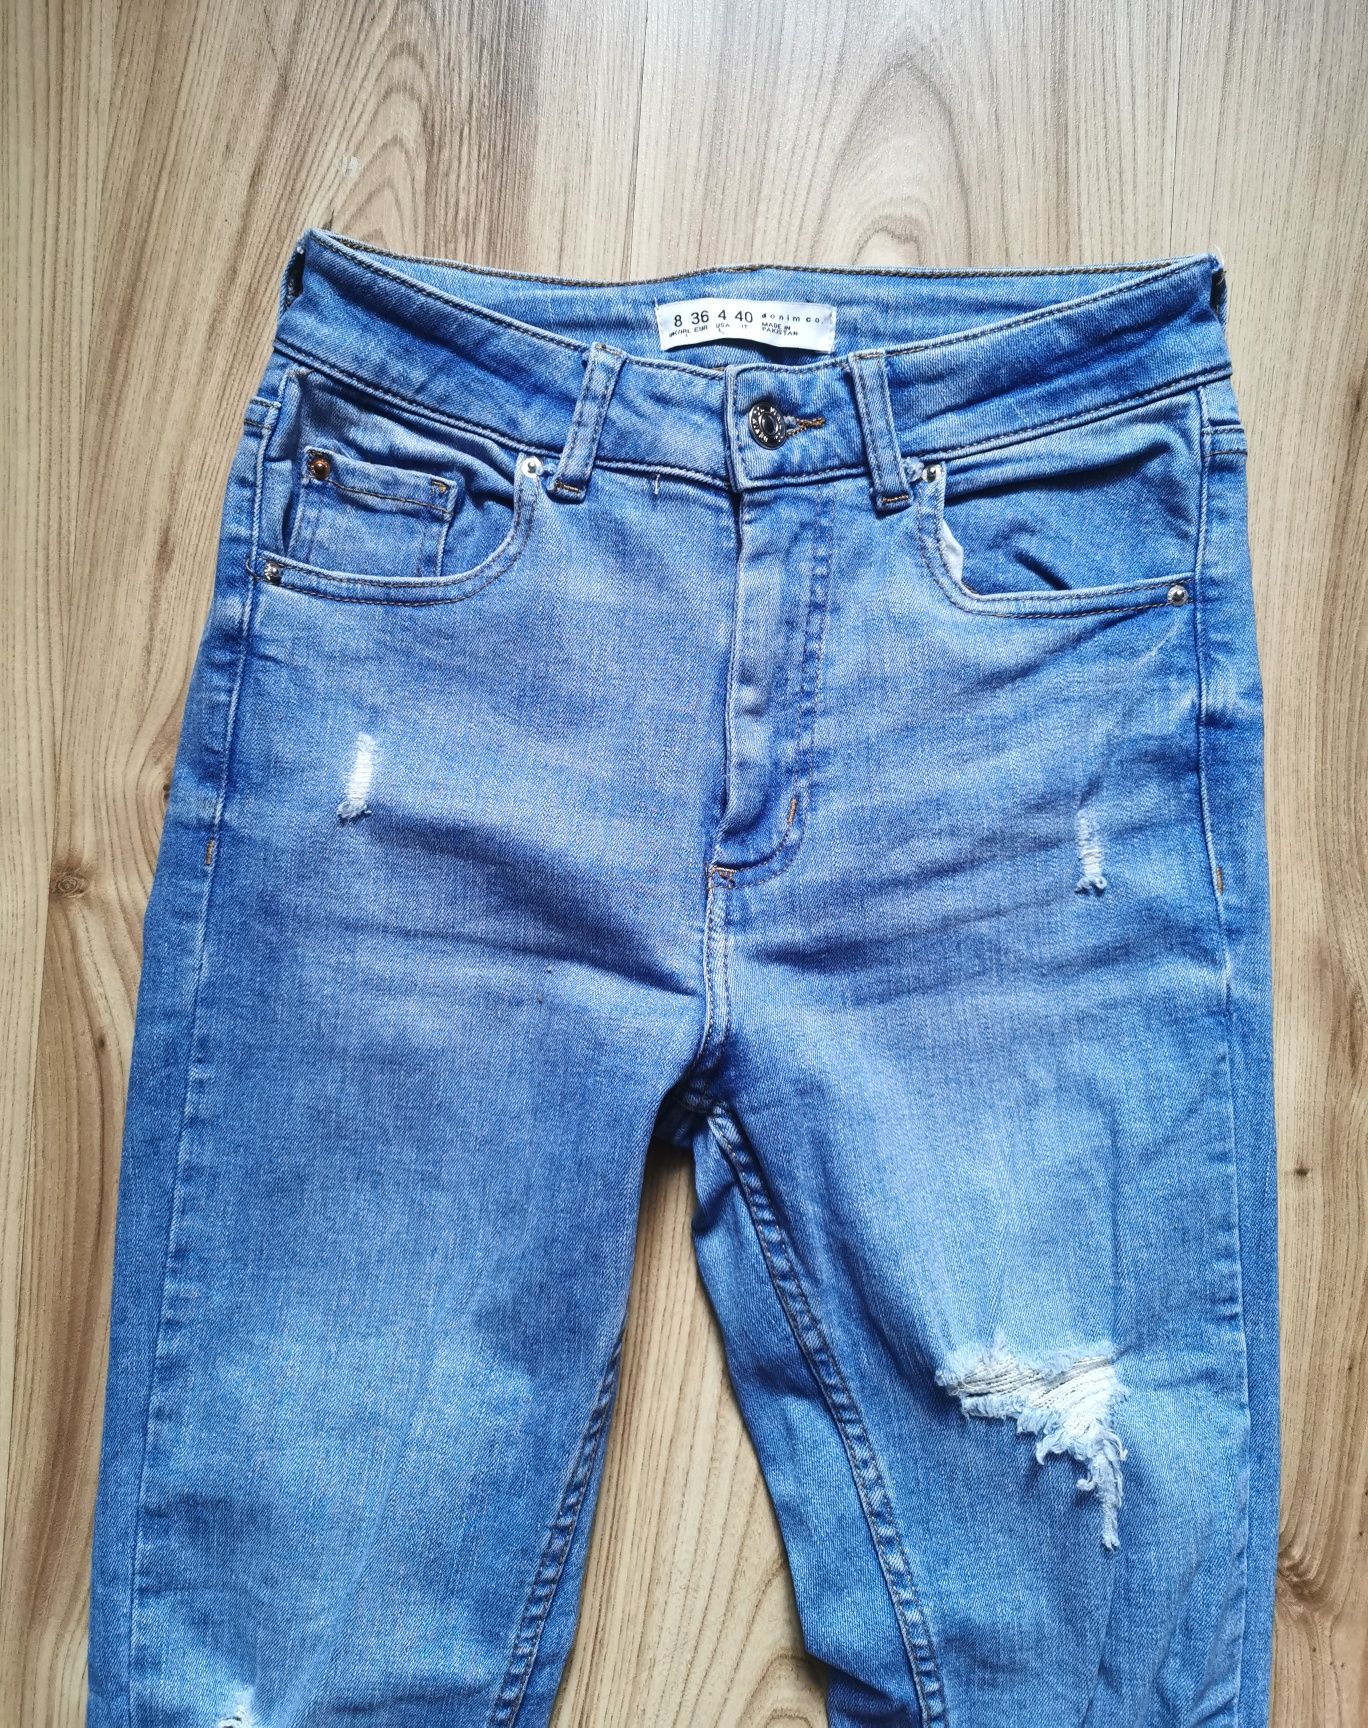 Spodnie jeansowe Rurki wysoki Stan roz. 36 S Primark dziurawe